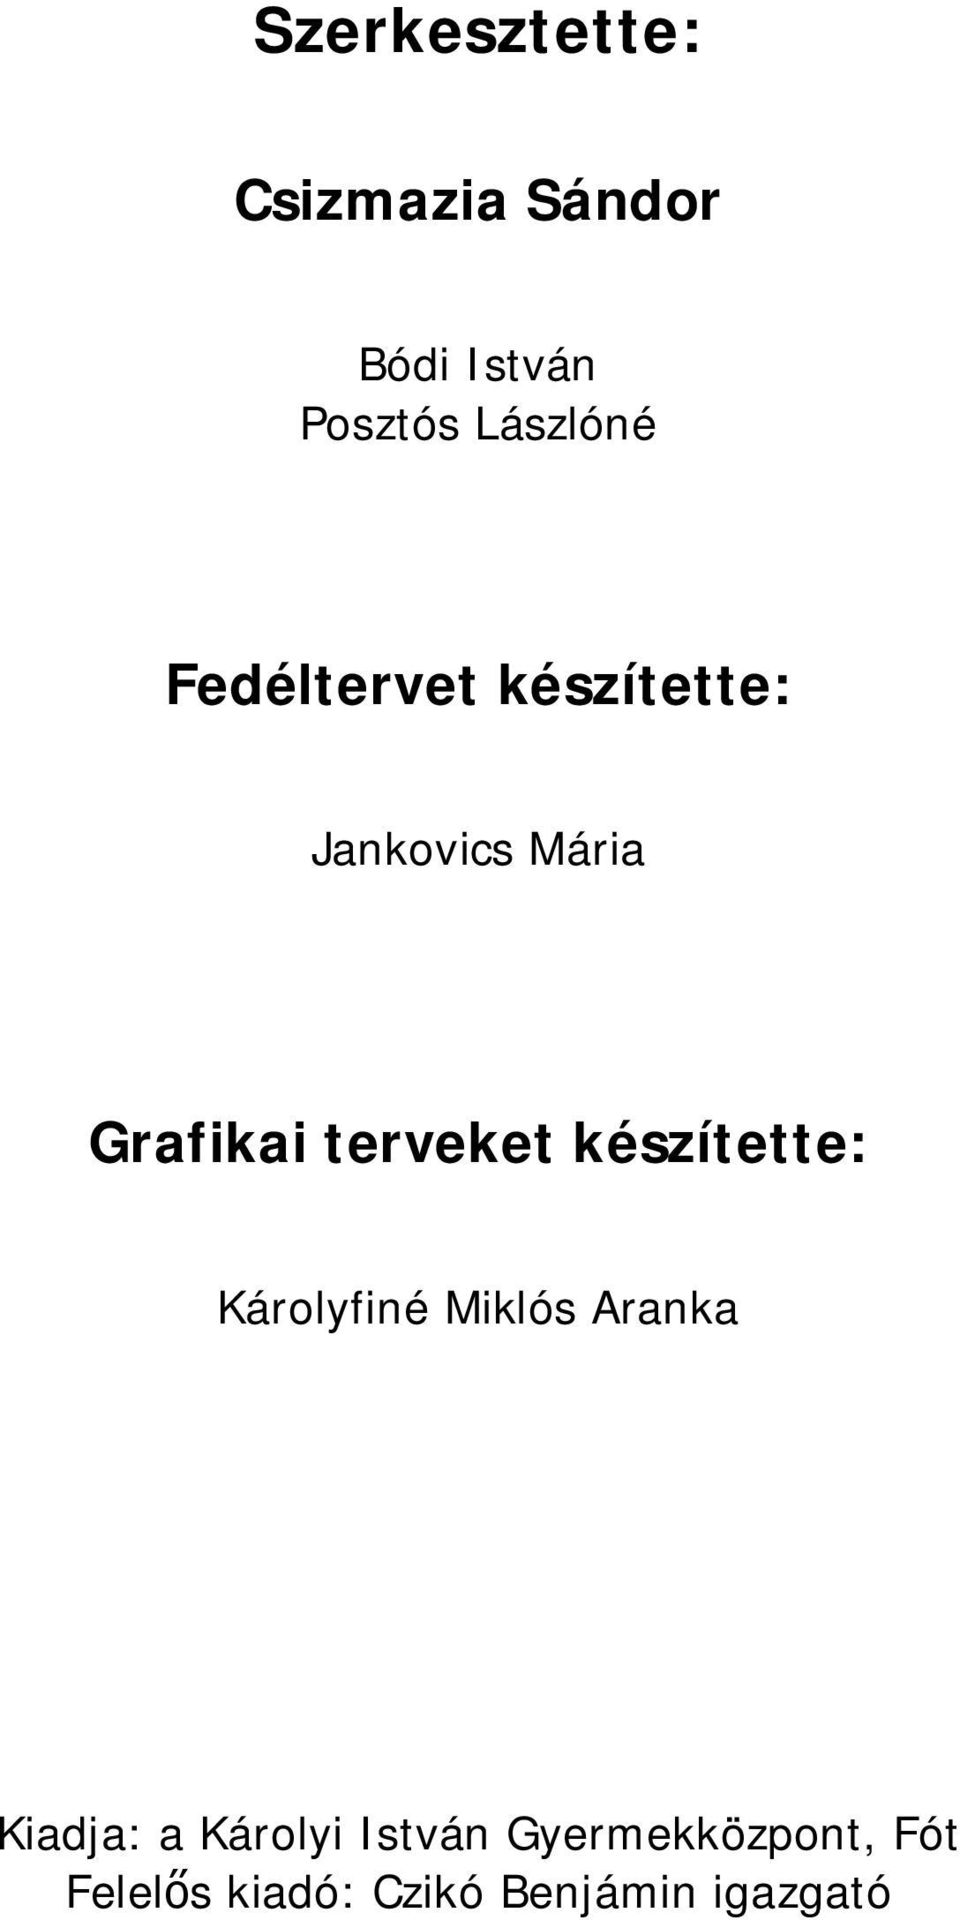 terveket készítette: Károlyfiné Miklós Aranka Kiadja: a